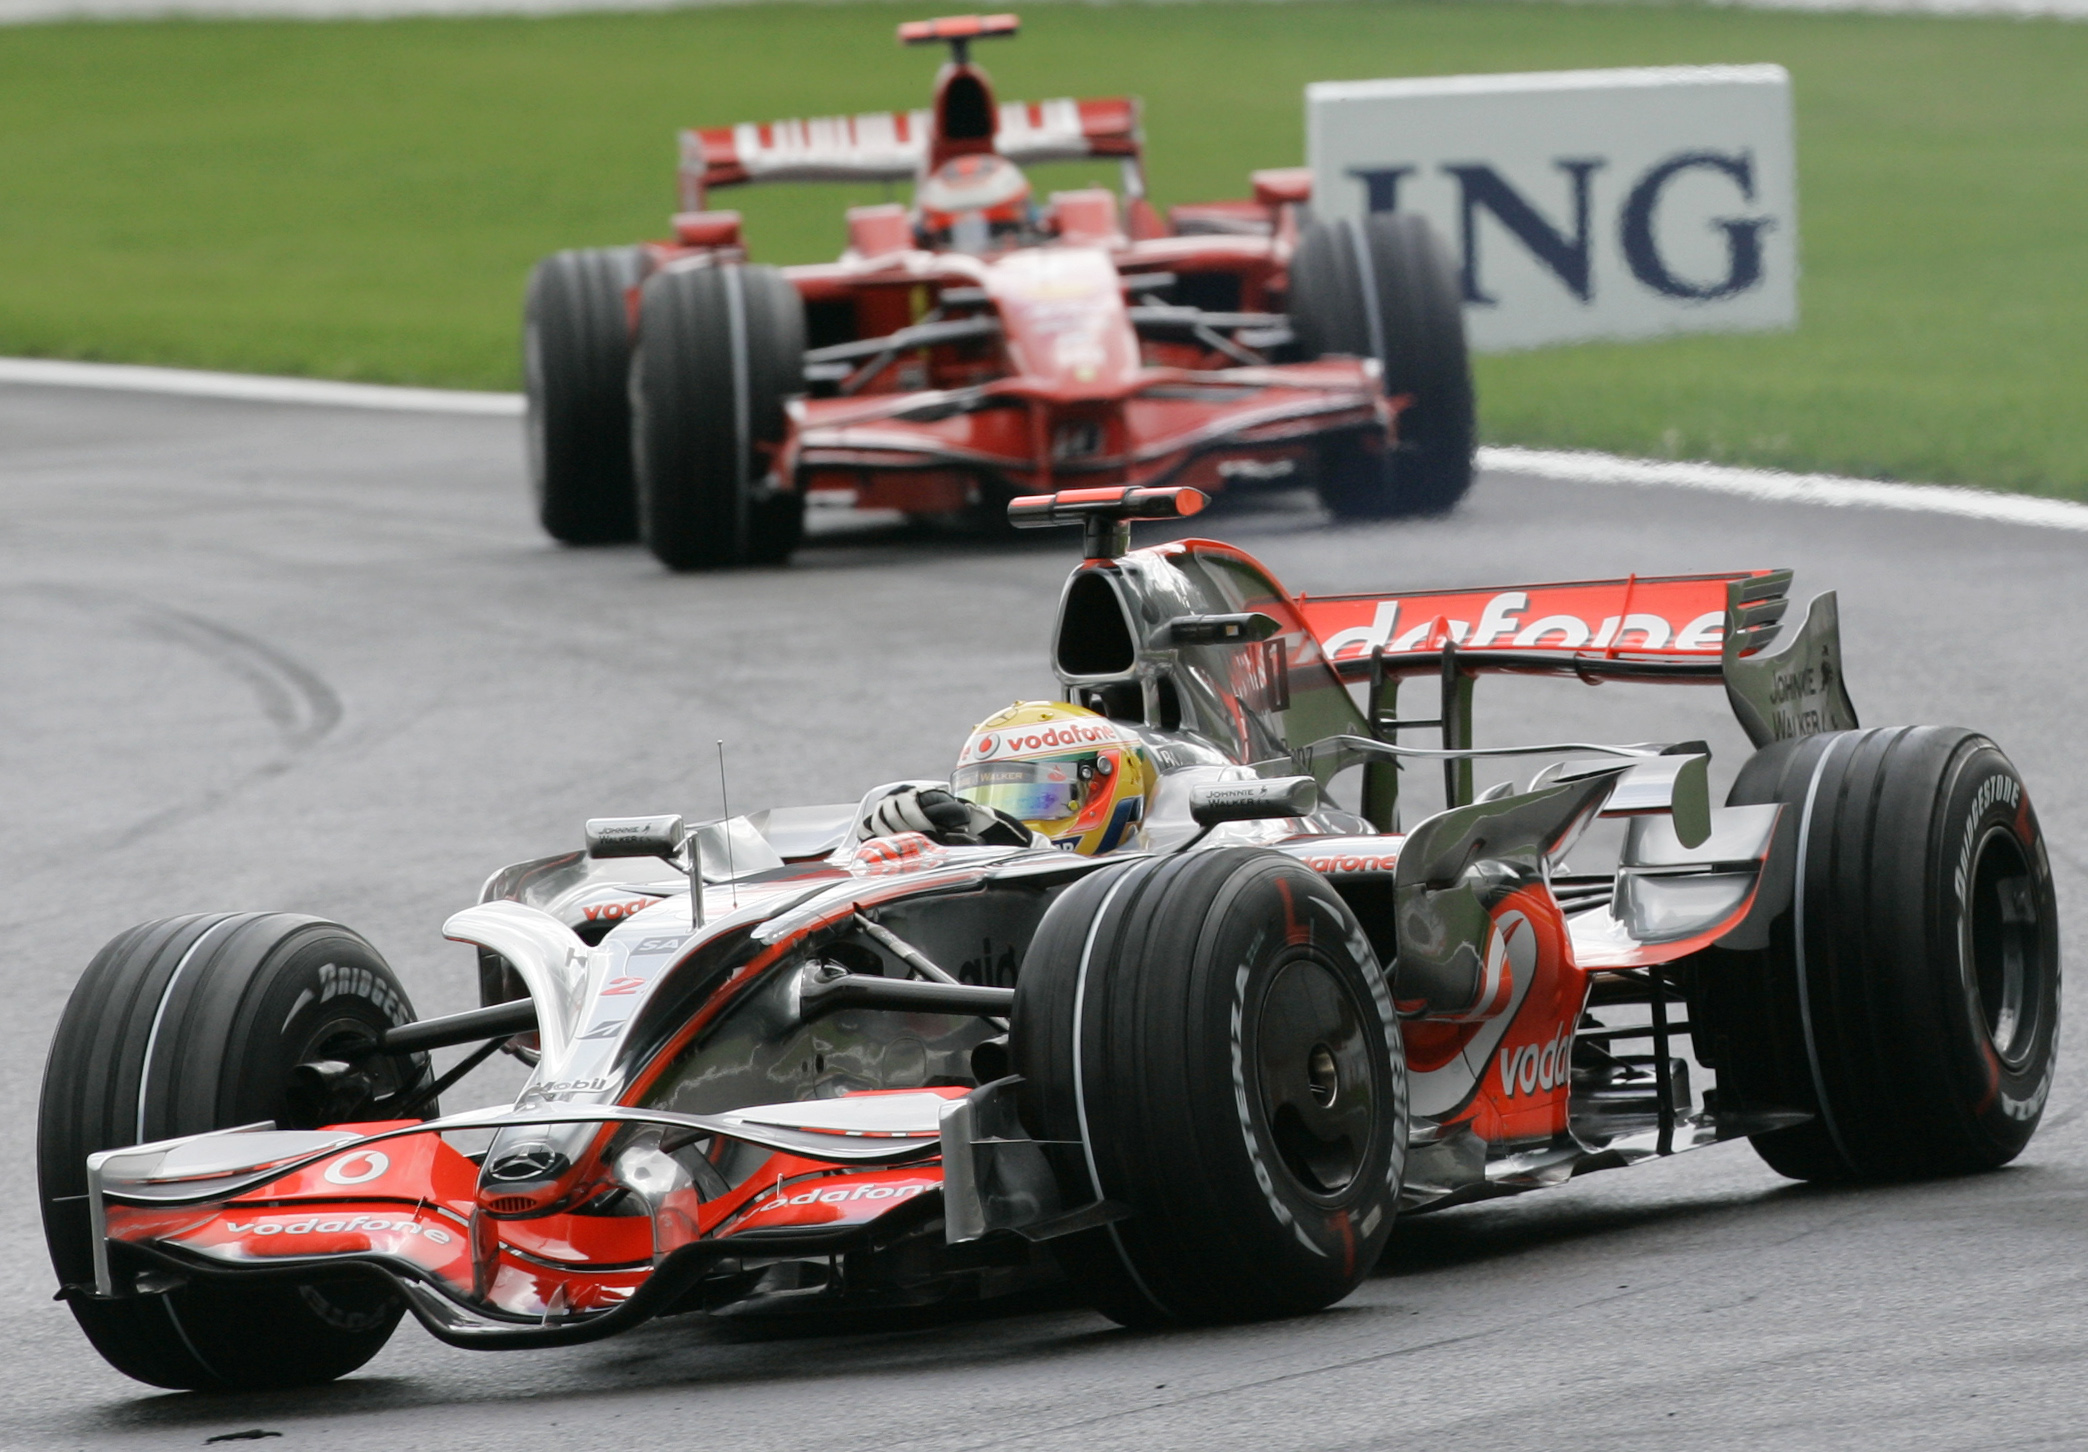 JH22 Spa-Francorchamps - V popredí monopost jazdca F1  zo stajne McLaren Mercedes Brita Lewisa Hamiltona počas Veľkej ceny Belgicka na okruhu Spa-Francorchamps 7. septembra 2008.